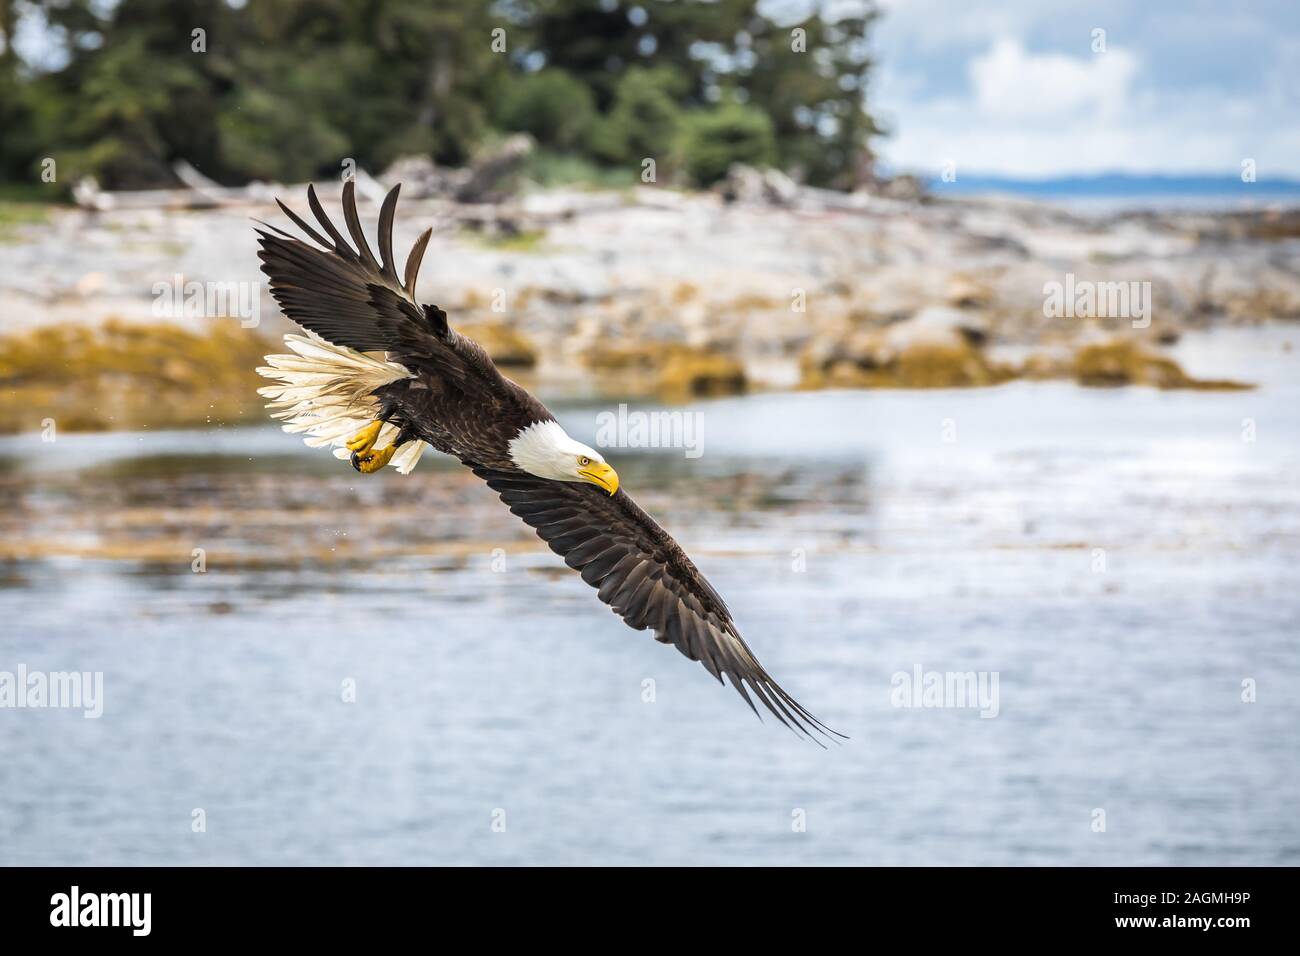 Canadian Bald Eagle (haliaeetus leucocephalus) flying in its habitat Stock Photo